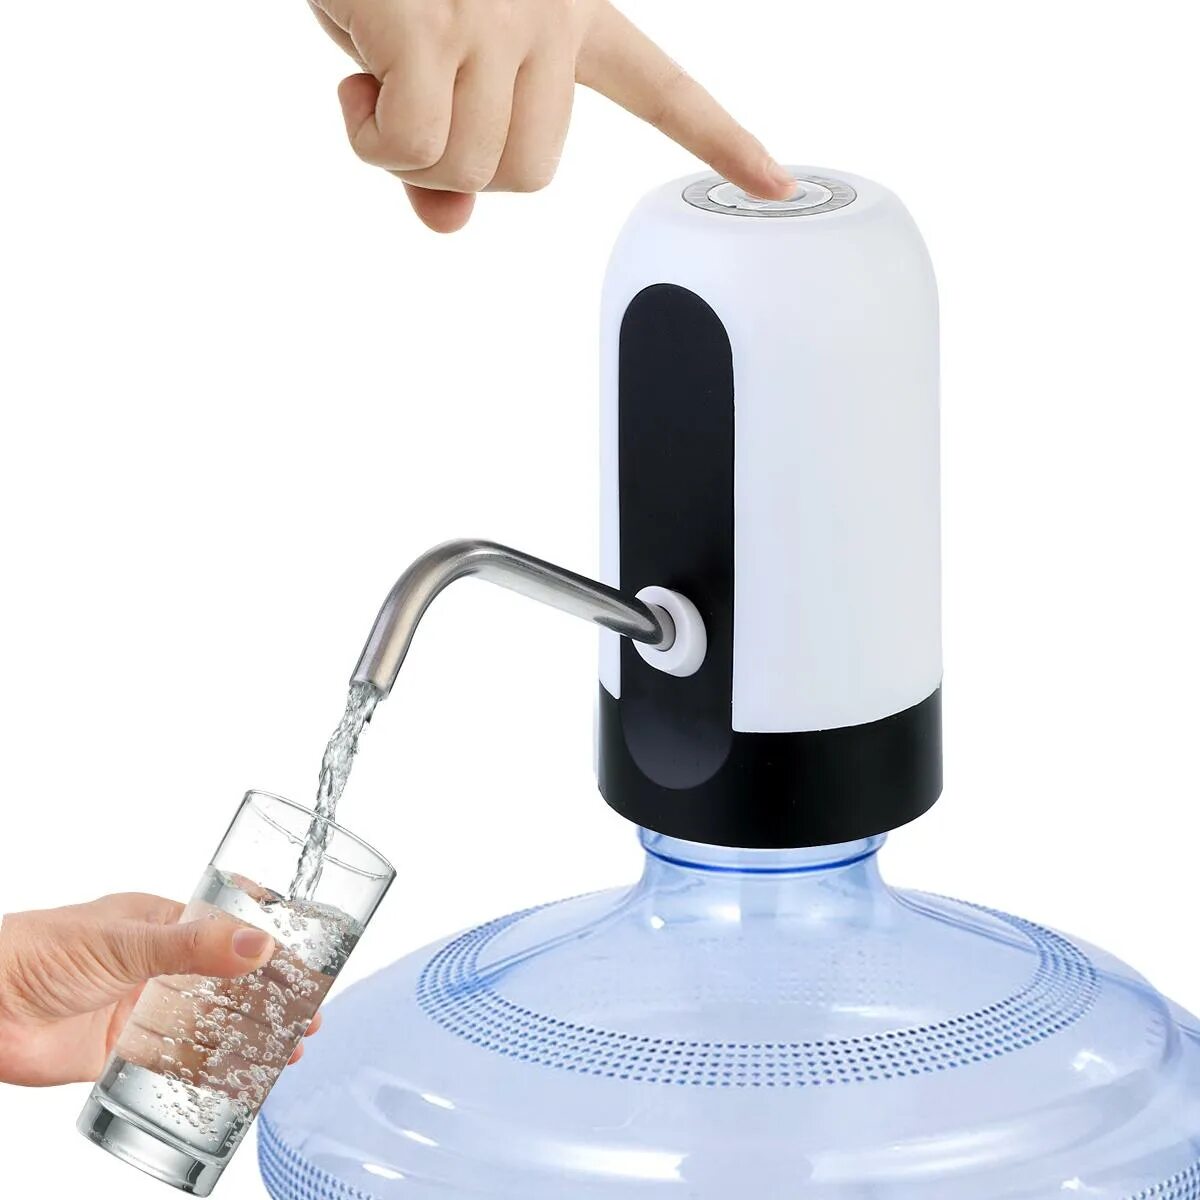 Емкость вода электрическая. Автоматический насос для воды Automatic Water Dispenser. Помпа аккумуляторная для воды Energy en-008e. Dispenser для воды Pump. Насос для бутылок с водой Automatic Water Dispenser.